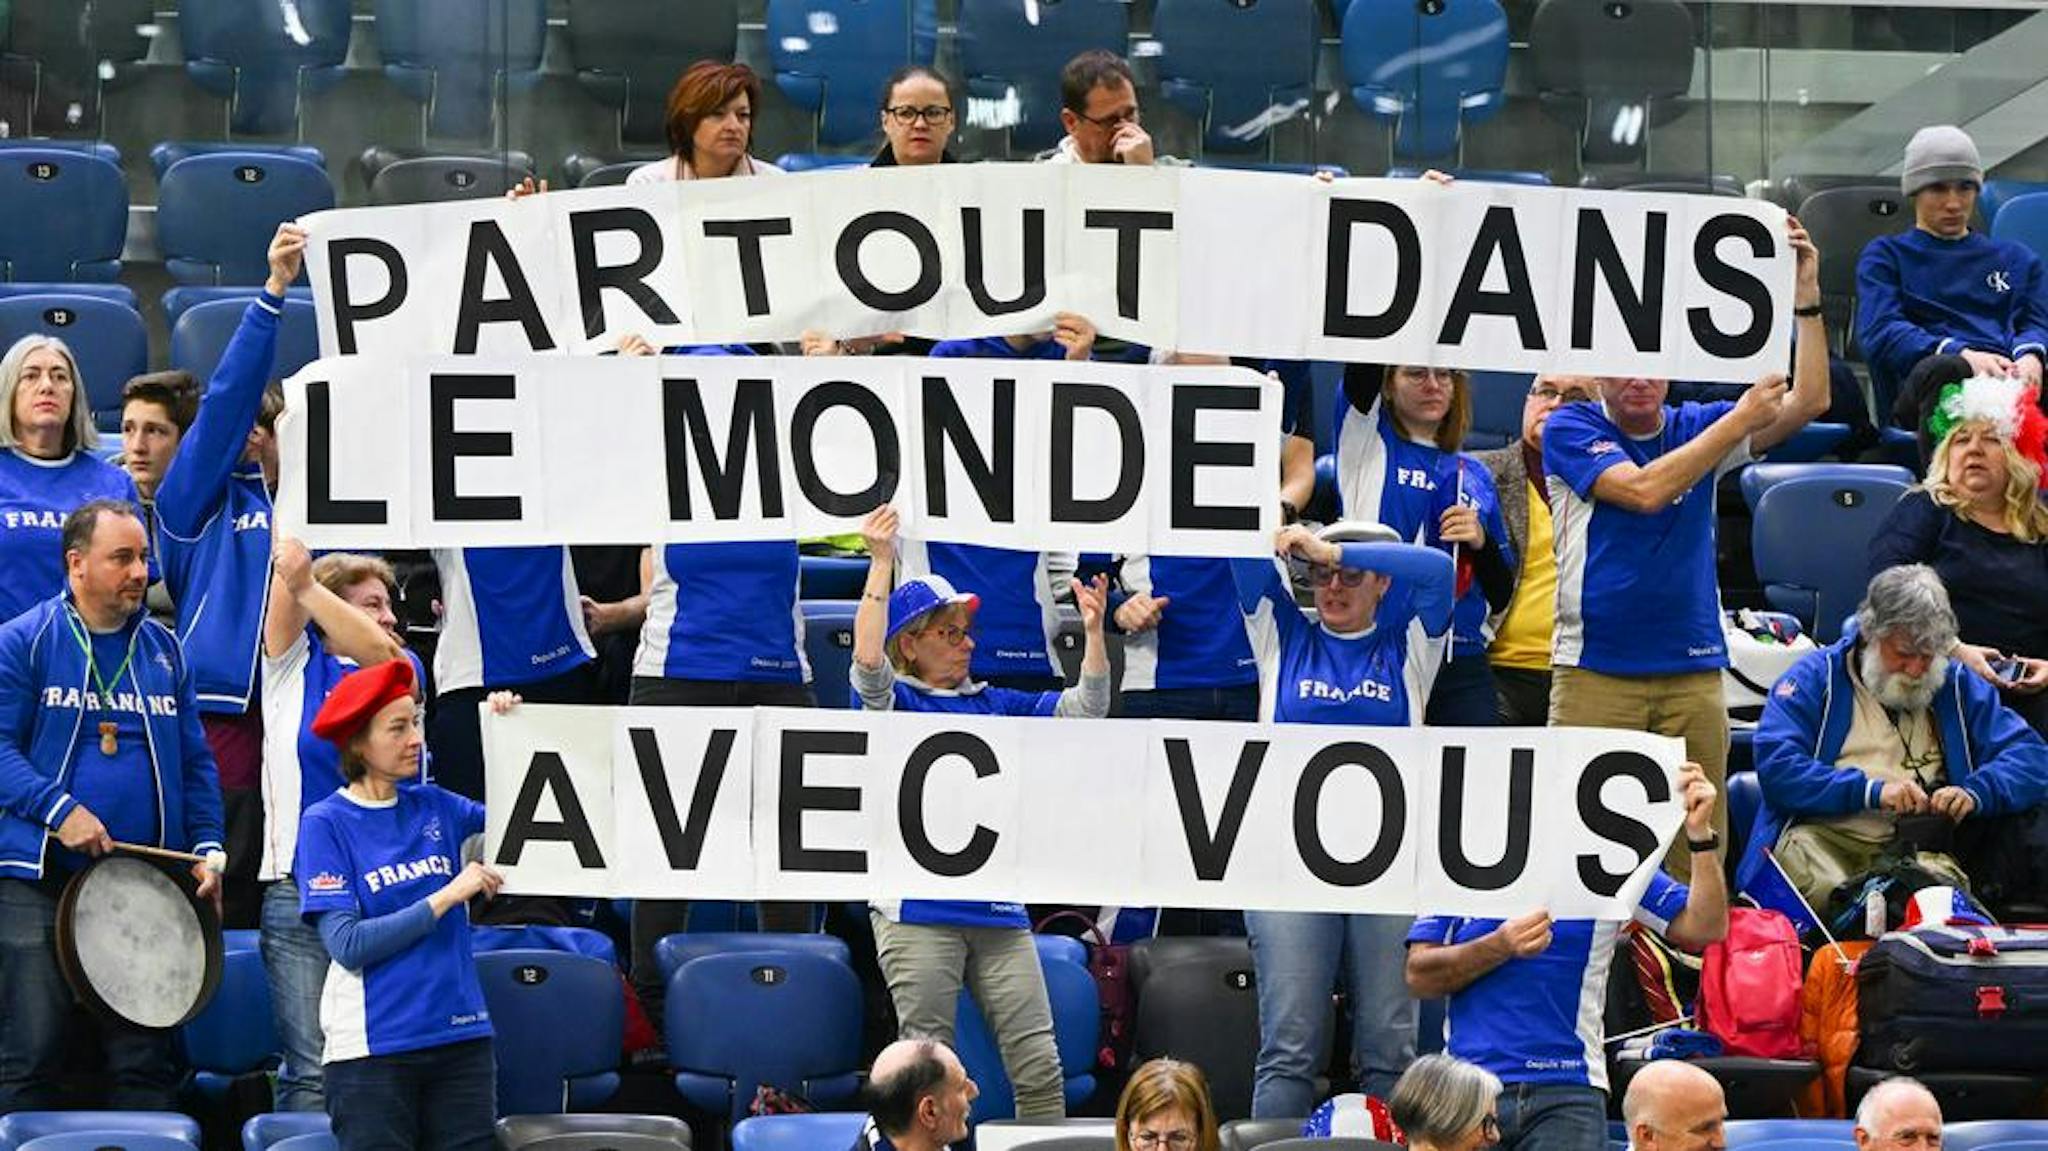 La France, toujours soutenue par ses fans.